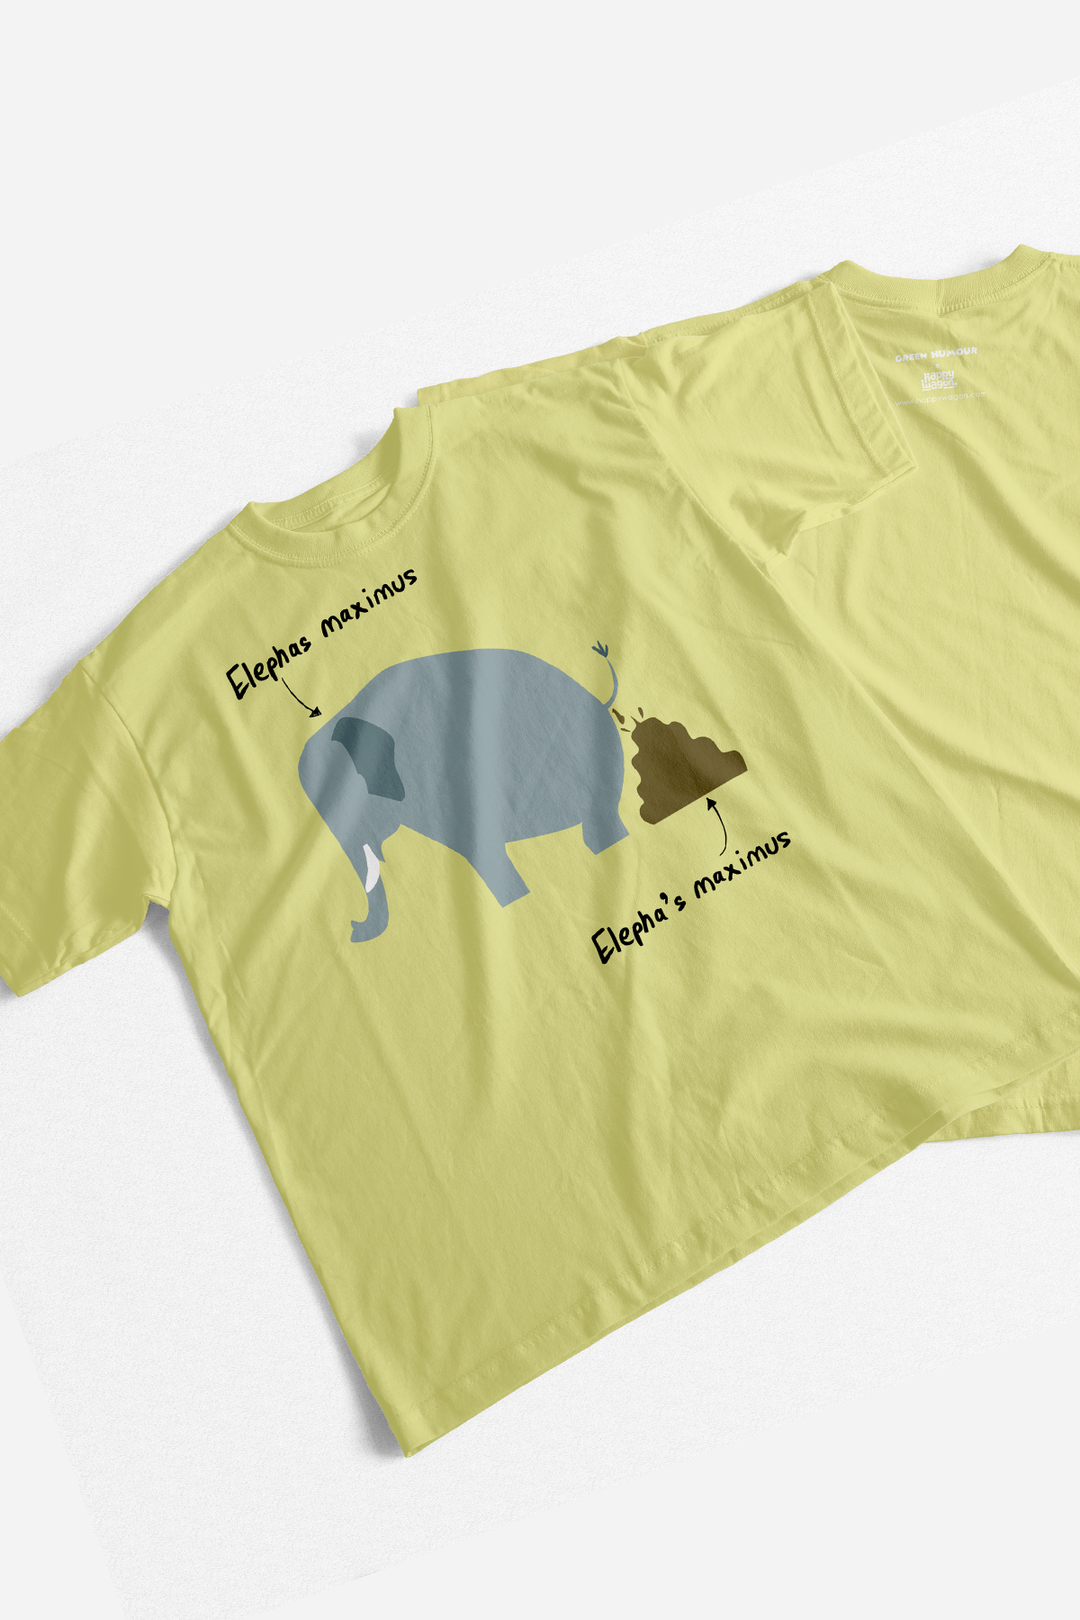 Elephas Maximus T-Shirt